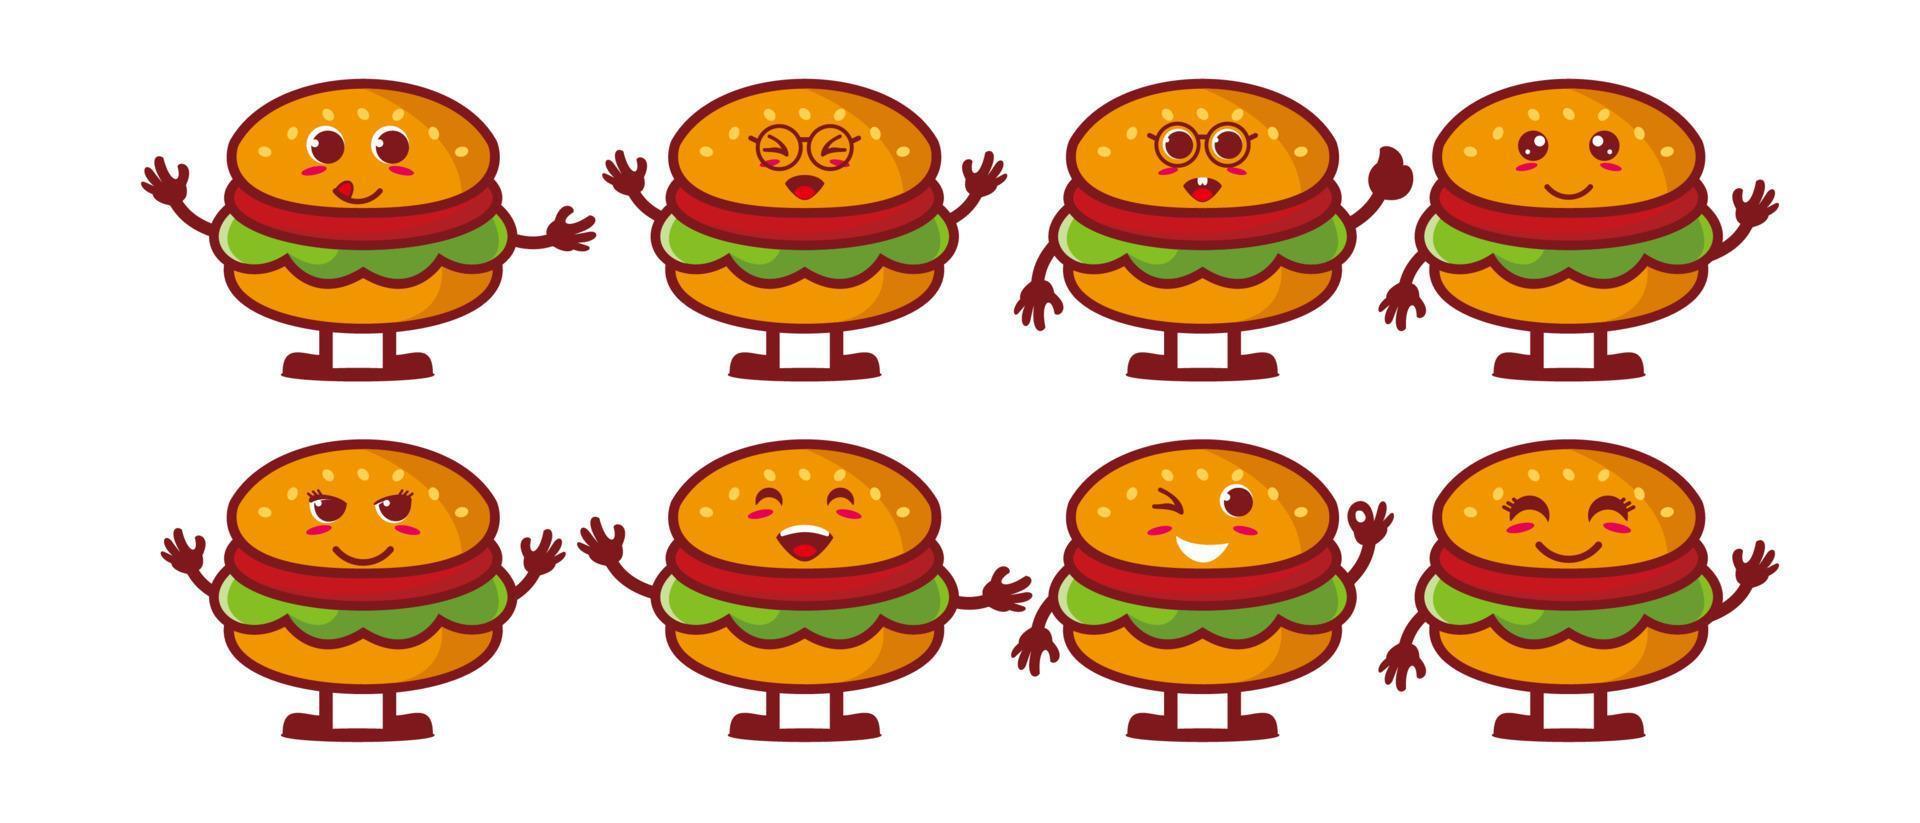 mignon souriant drôle burger set collection.vector dessin animé plat visage personnage mascotte illustration .isolé sur fond blanc vecteur